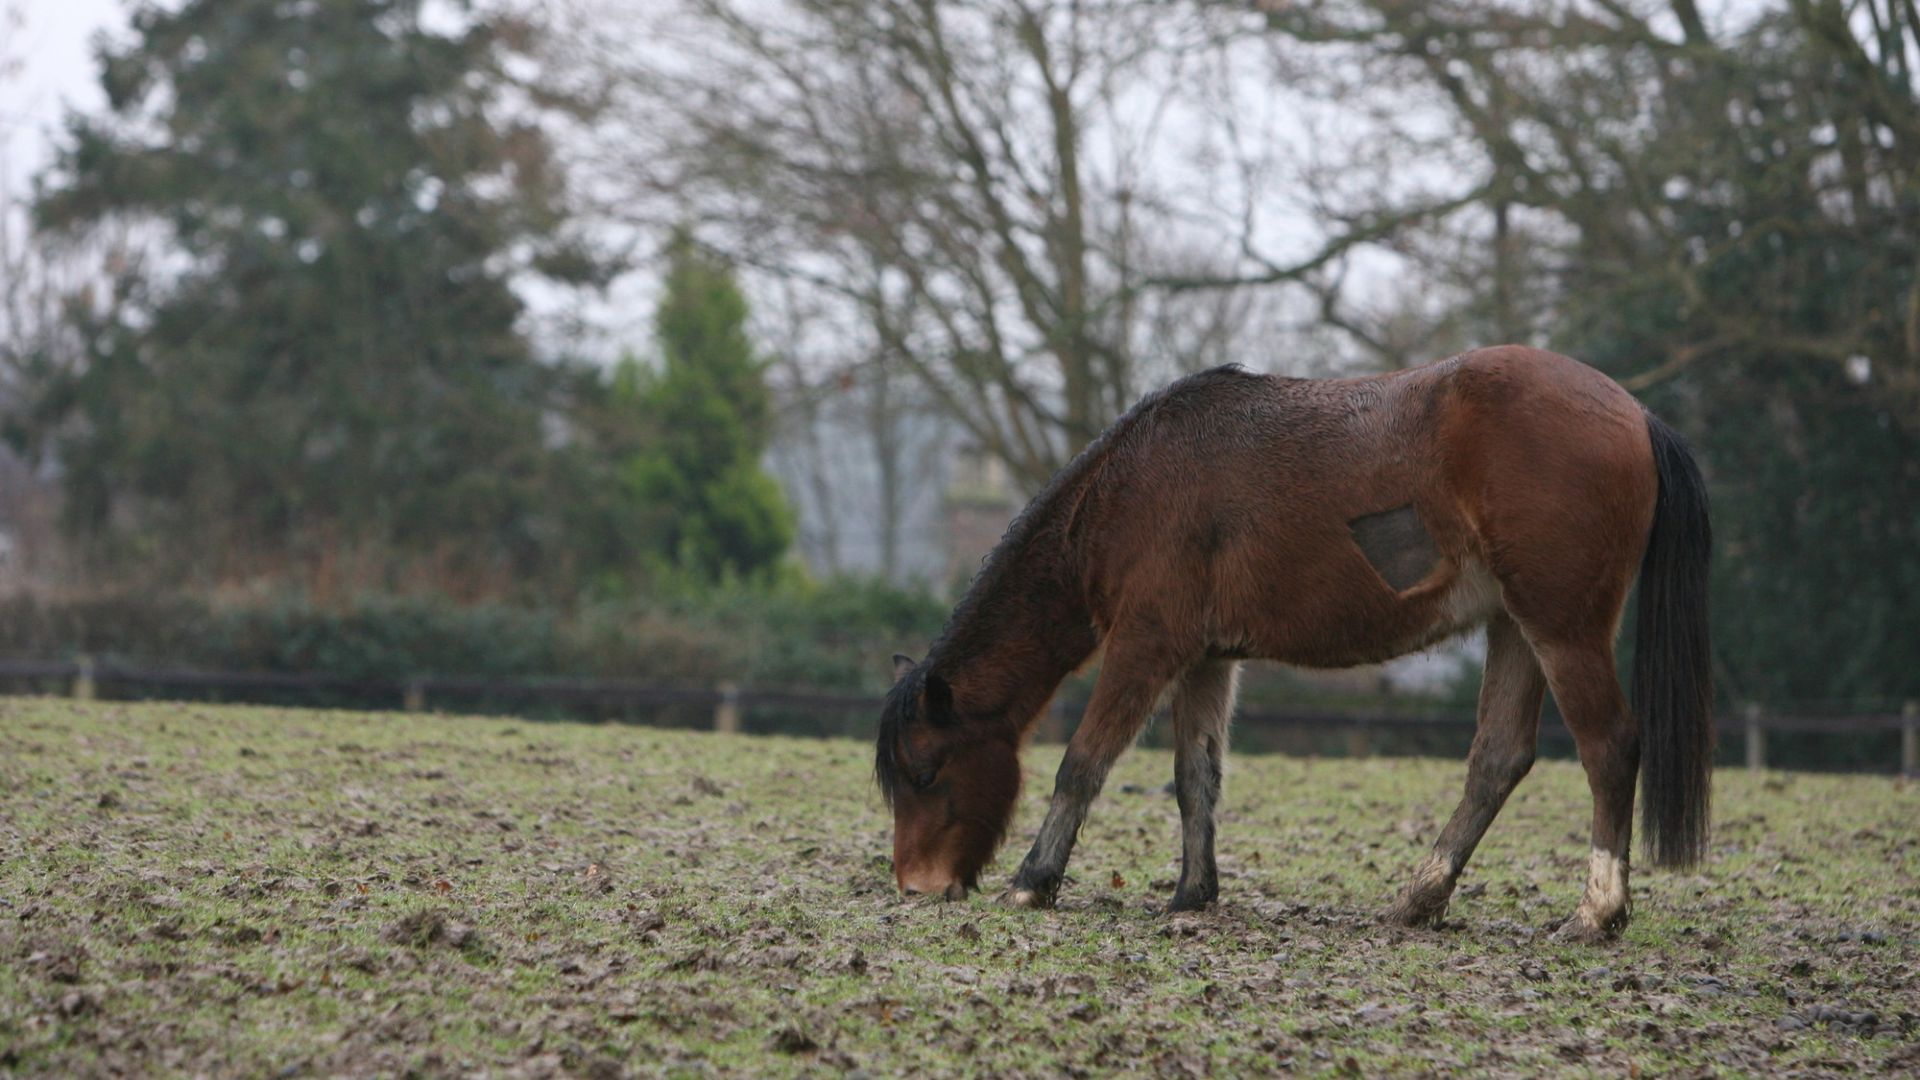 Bay pony grazing in a field